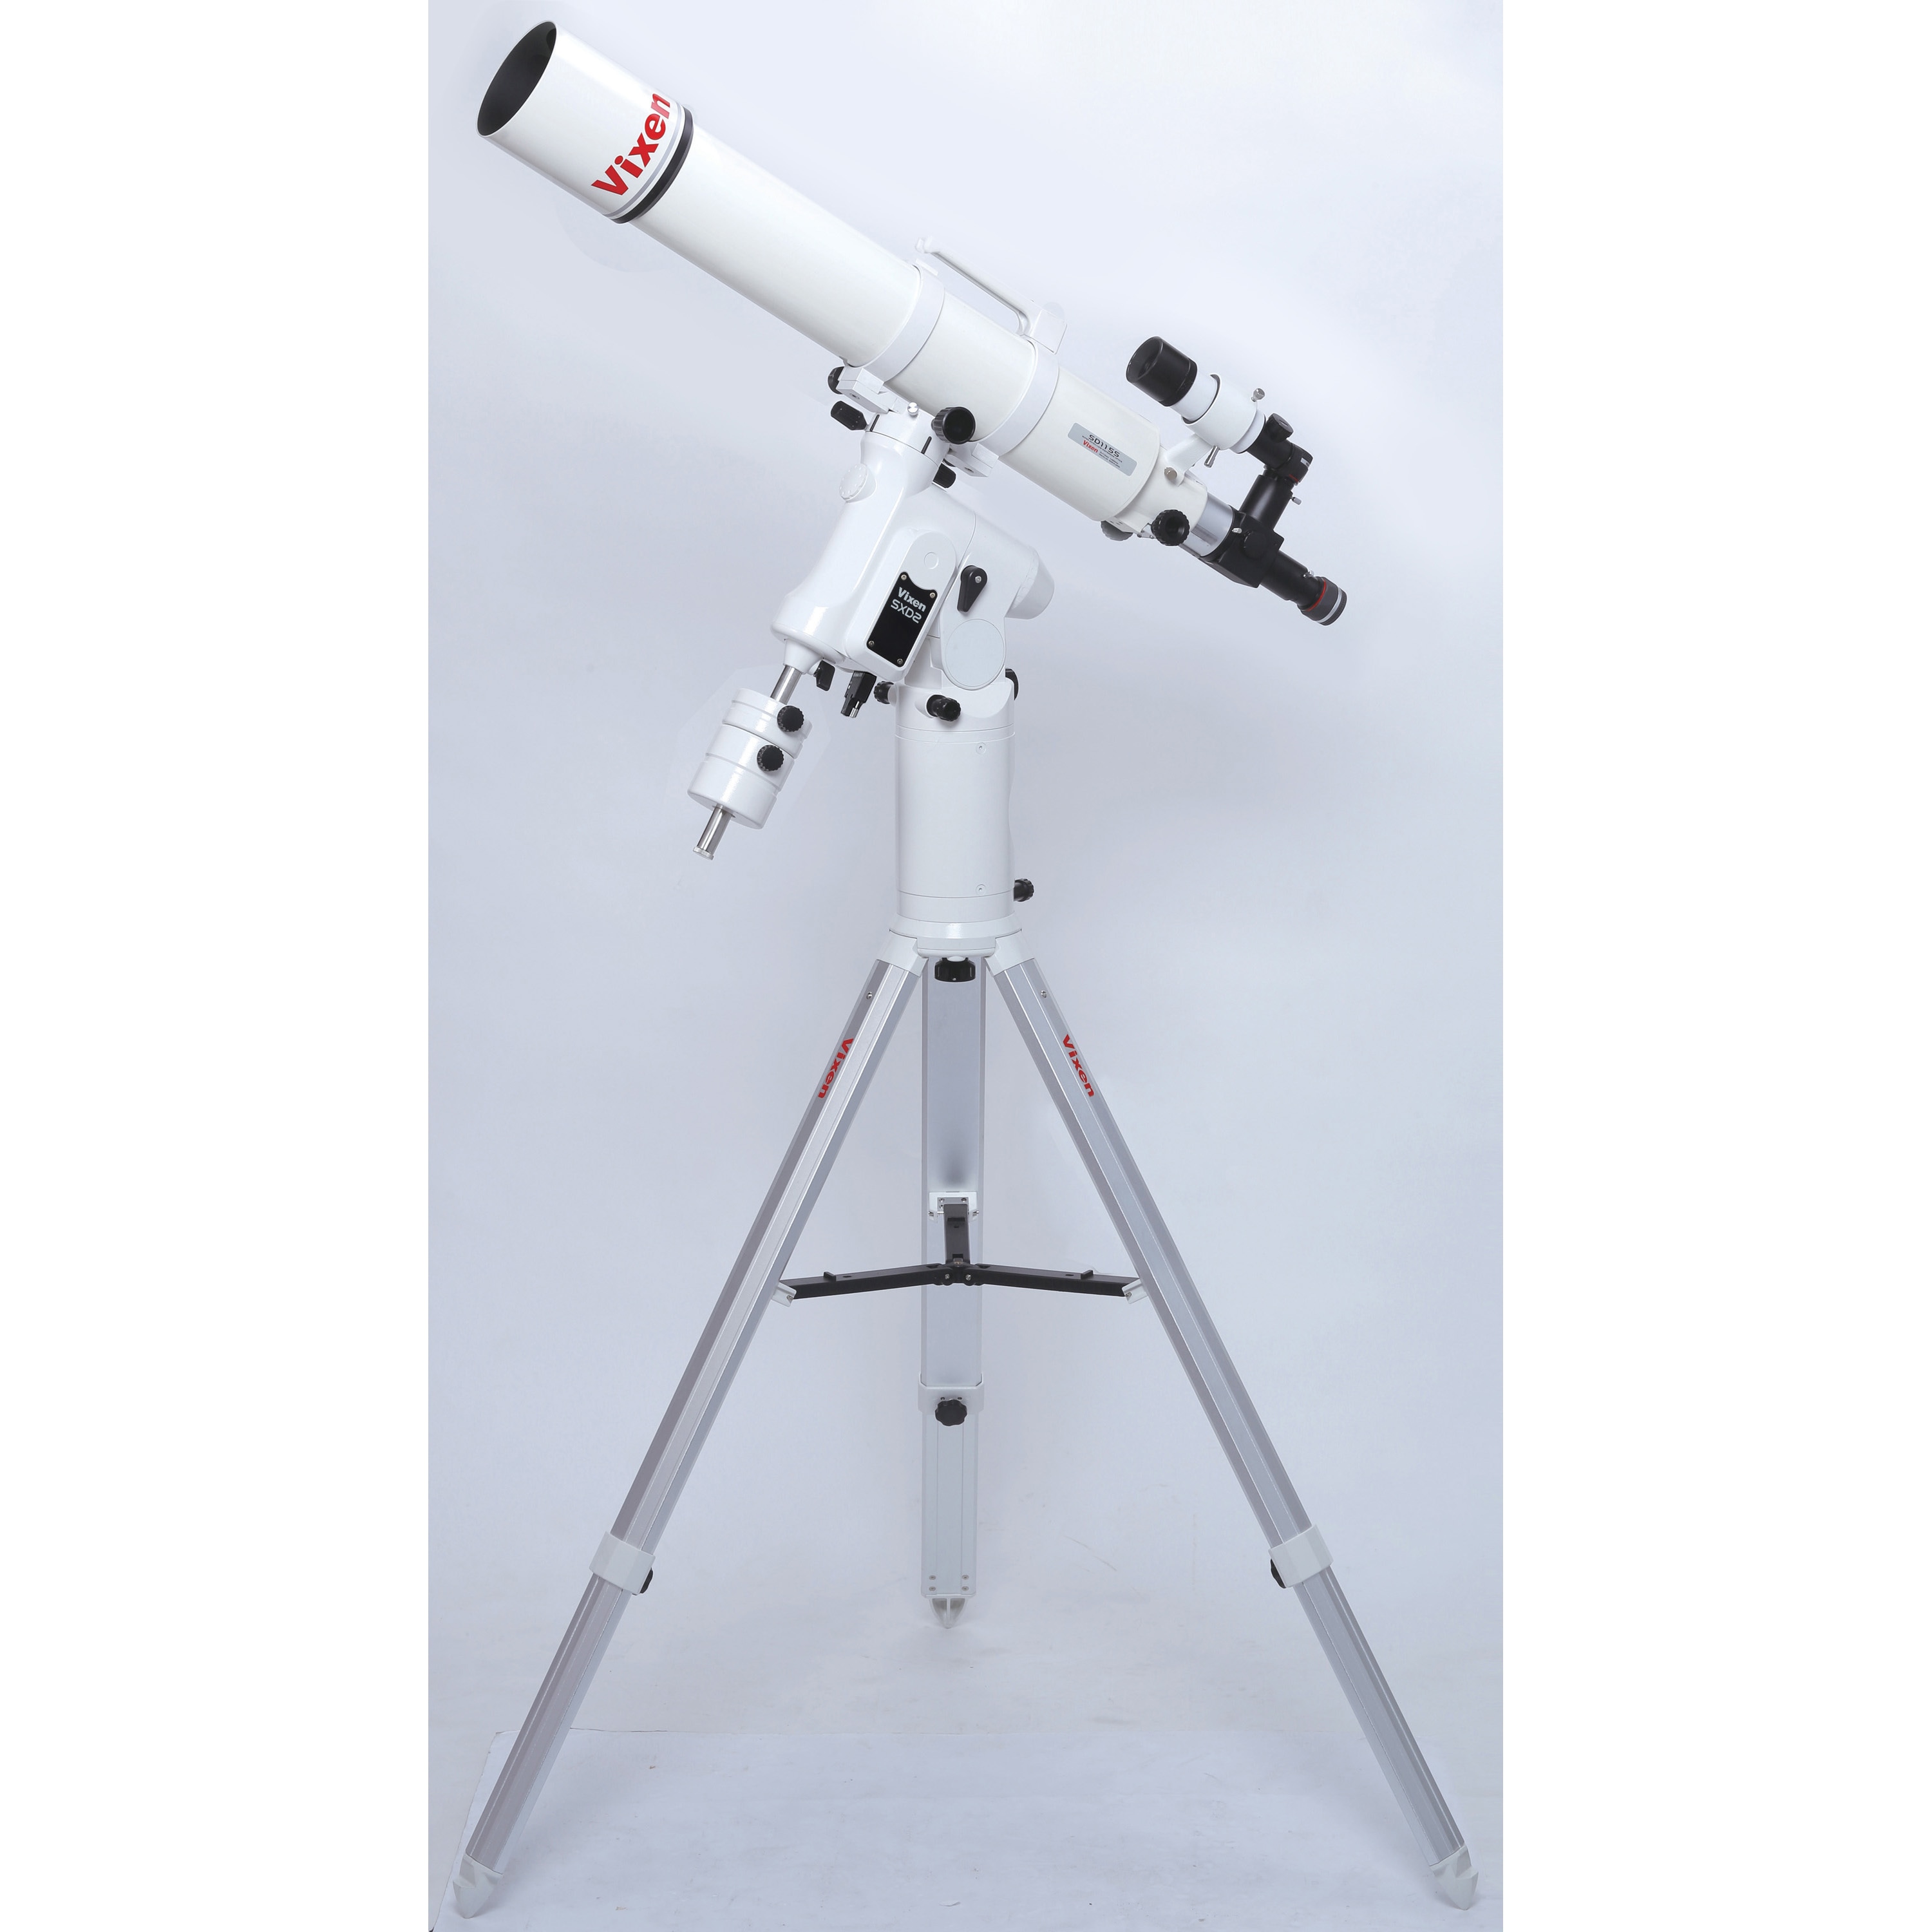 ビクセン SX2WL-VC200L 天体望遠鏡「SX2WL-VC200L」Vixen[SX2WLVC200L